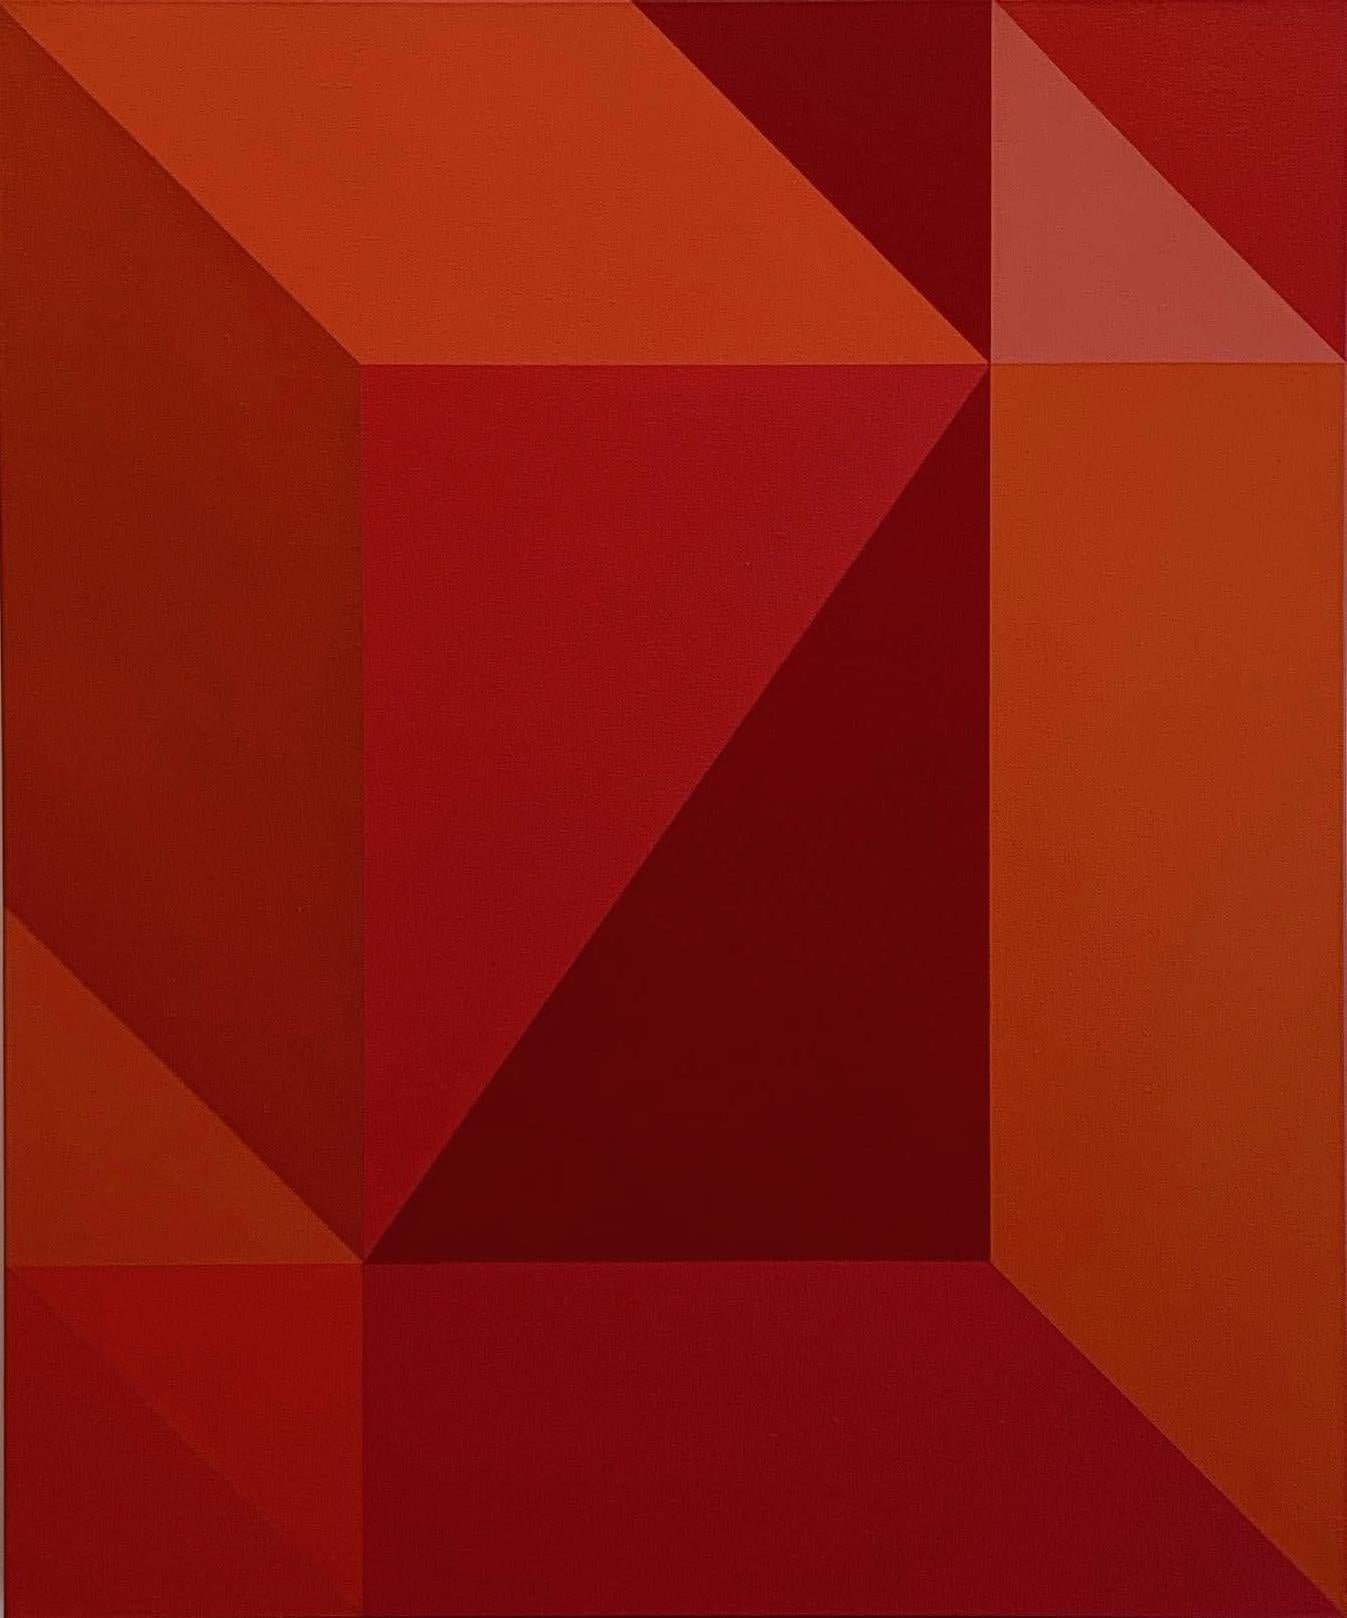 In diesem 36" x 30" großen Öl auf Leinwand Gemälde, 'Inversion,'  von Demetrios Papakostas hat der Künstler ein abstraktes Farbfeld aus Rottönen in scheinbar dreidimensionalen geometrischen Formationen geschaffen.  Die hellen und dunklen Formen in